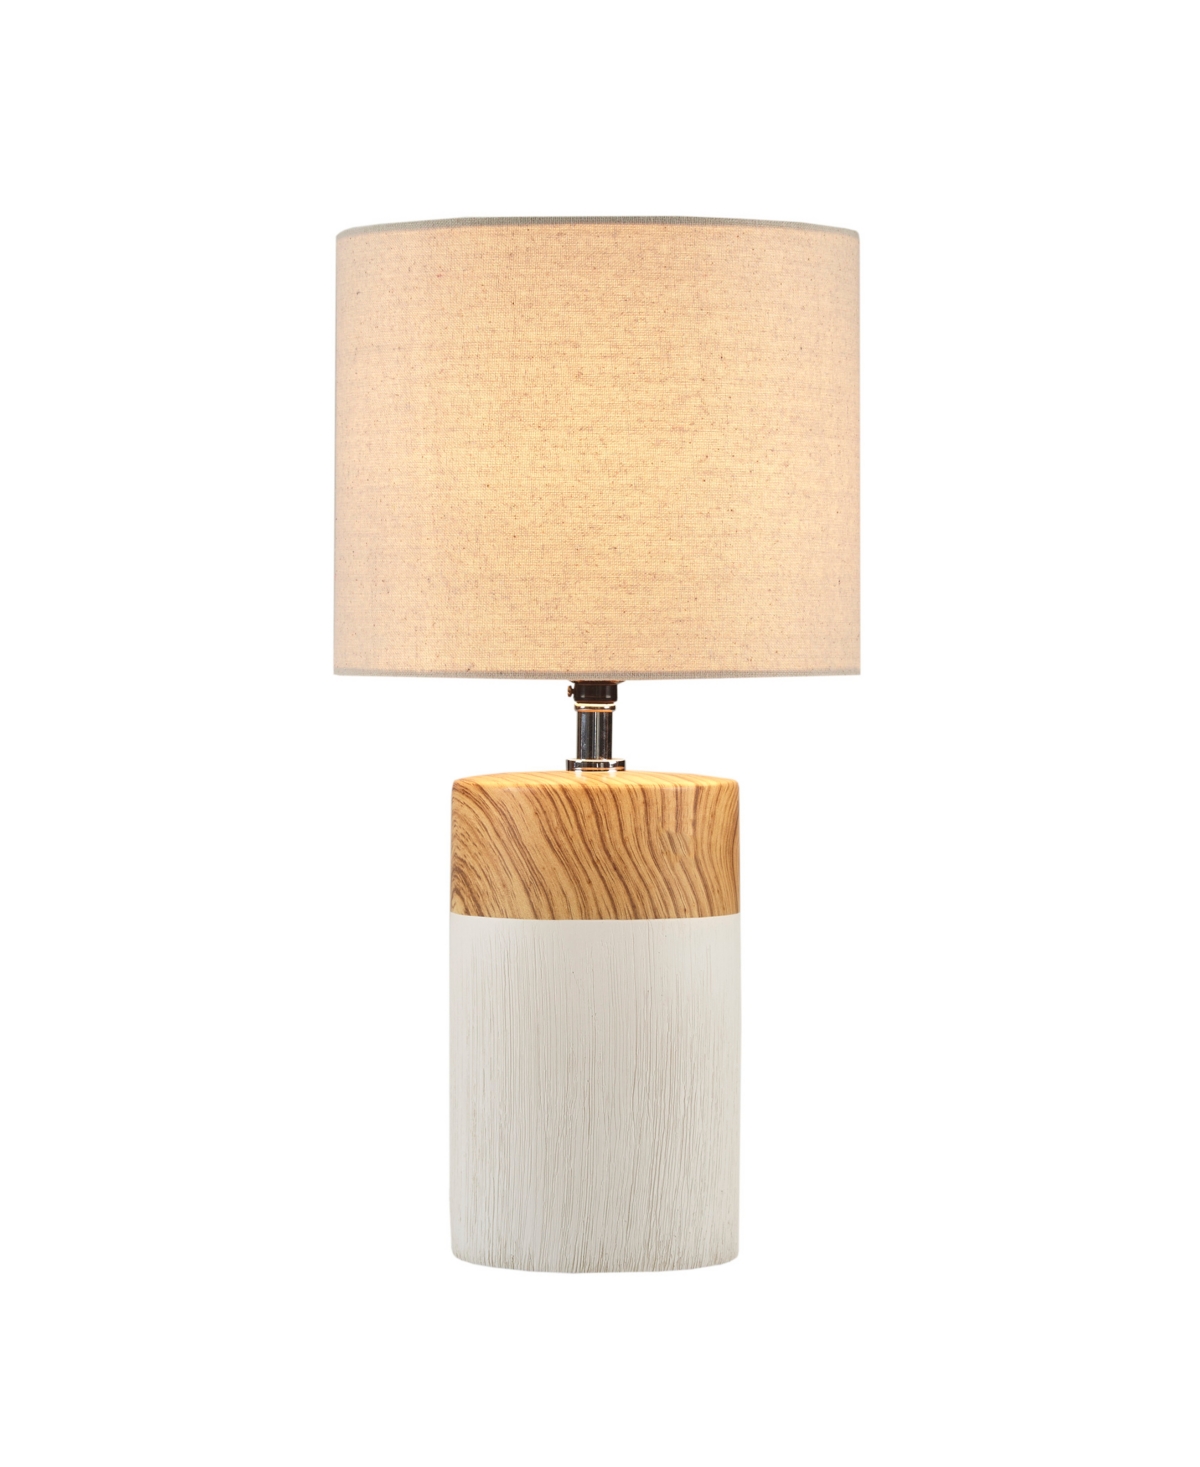 510 Design Nicolo Table Lamp In White